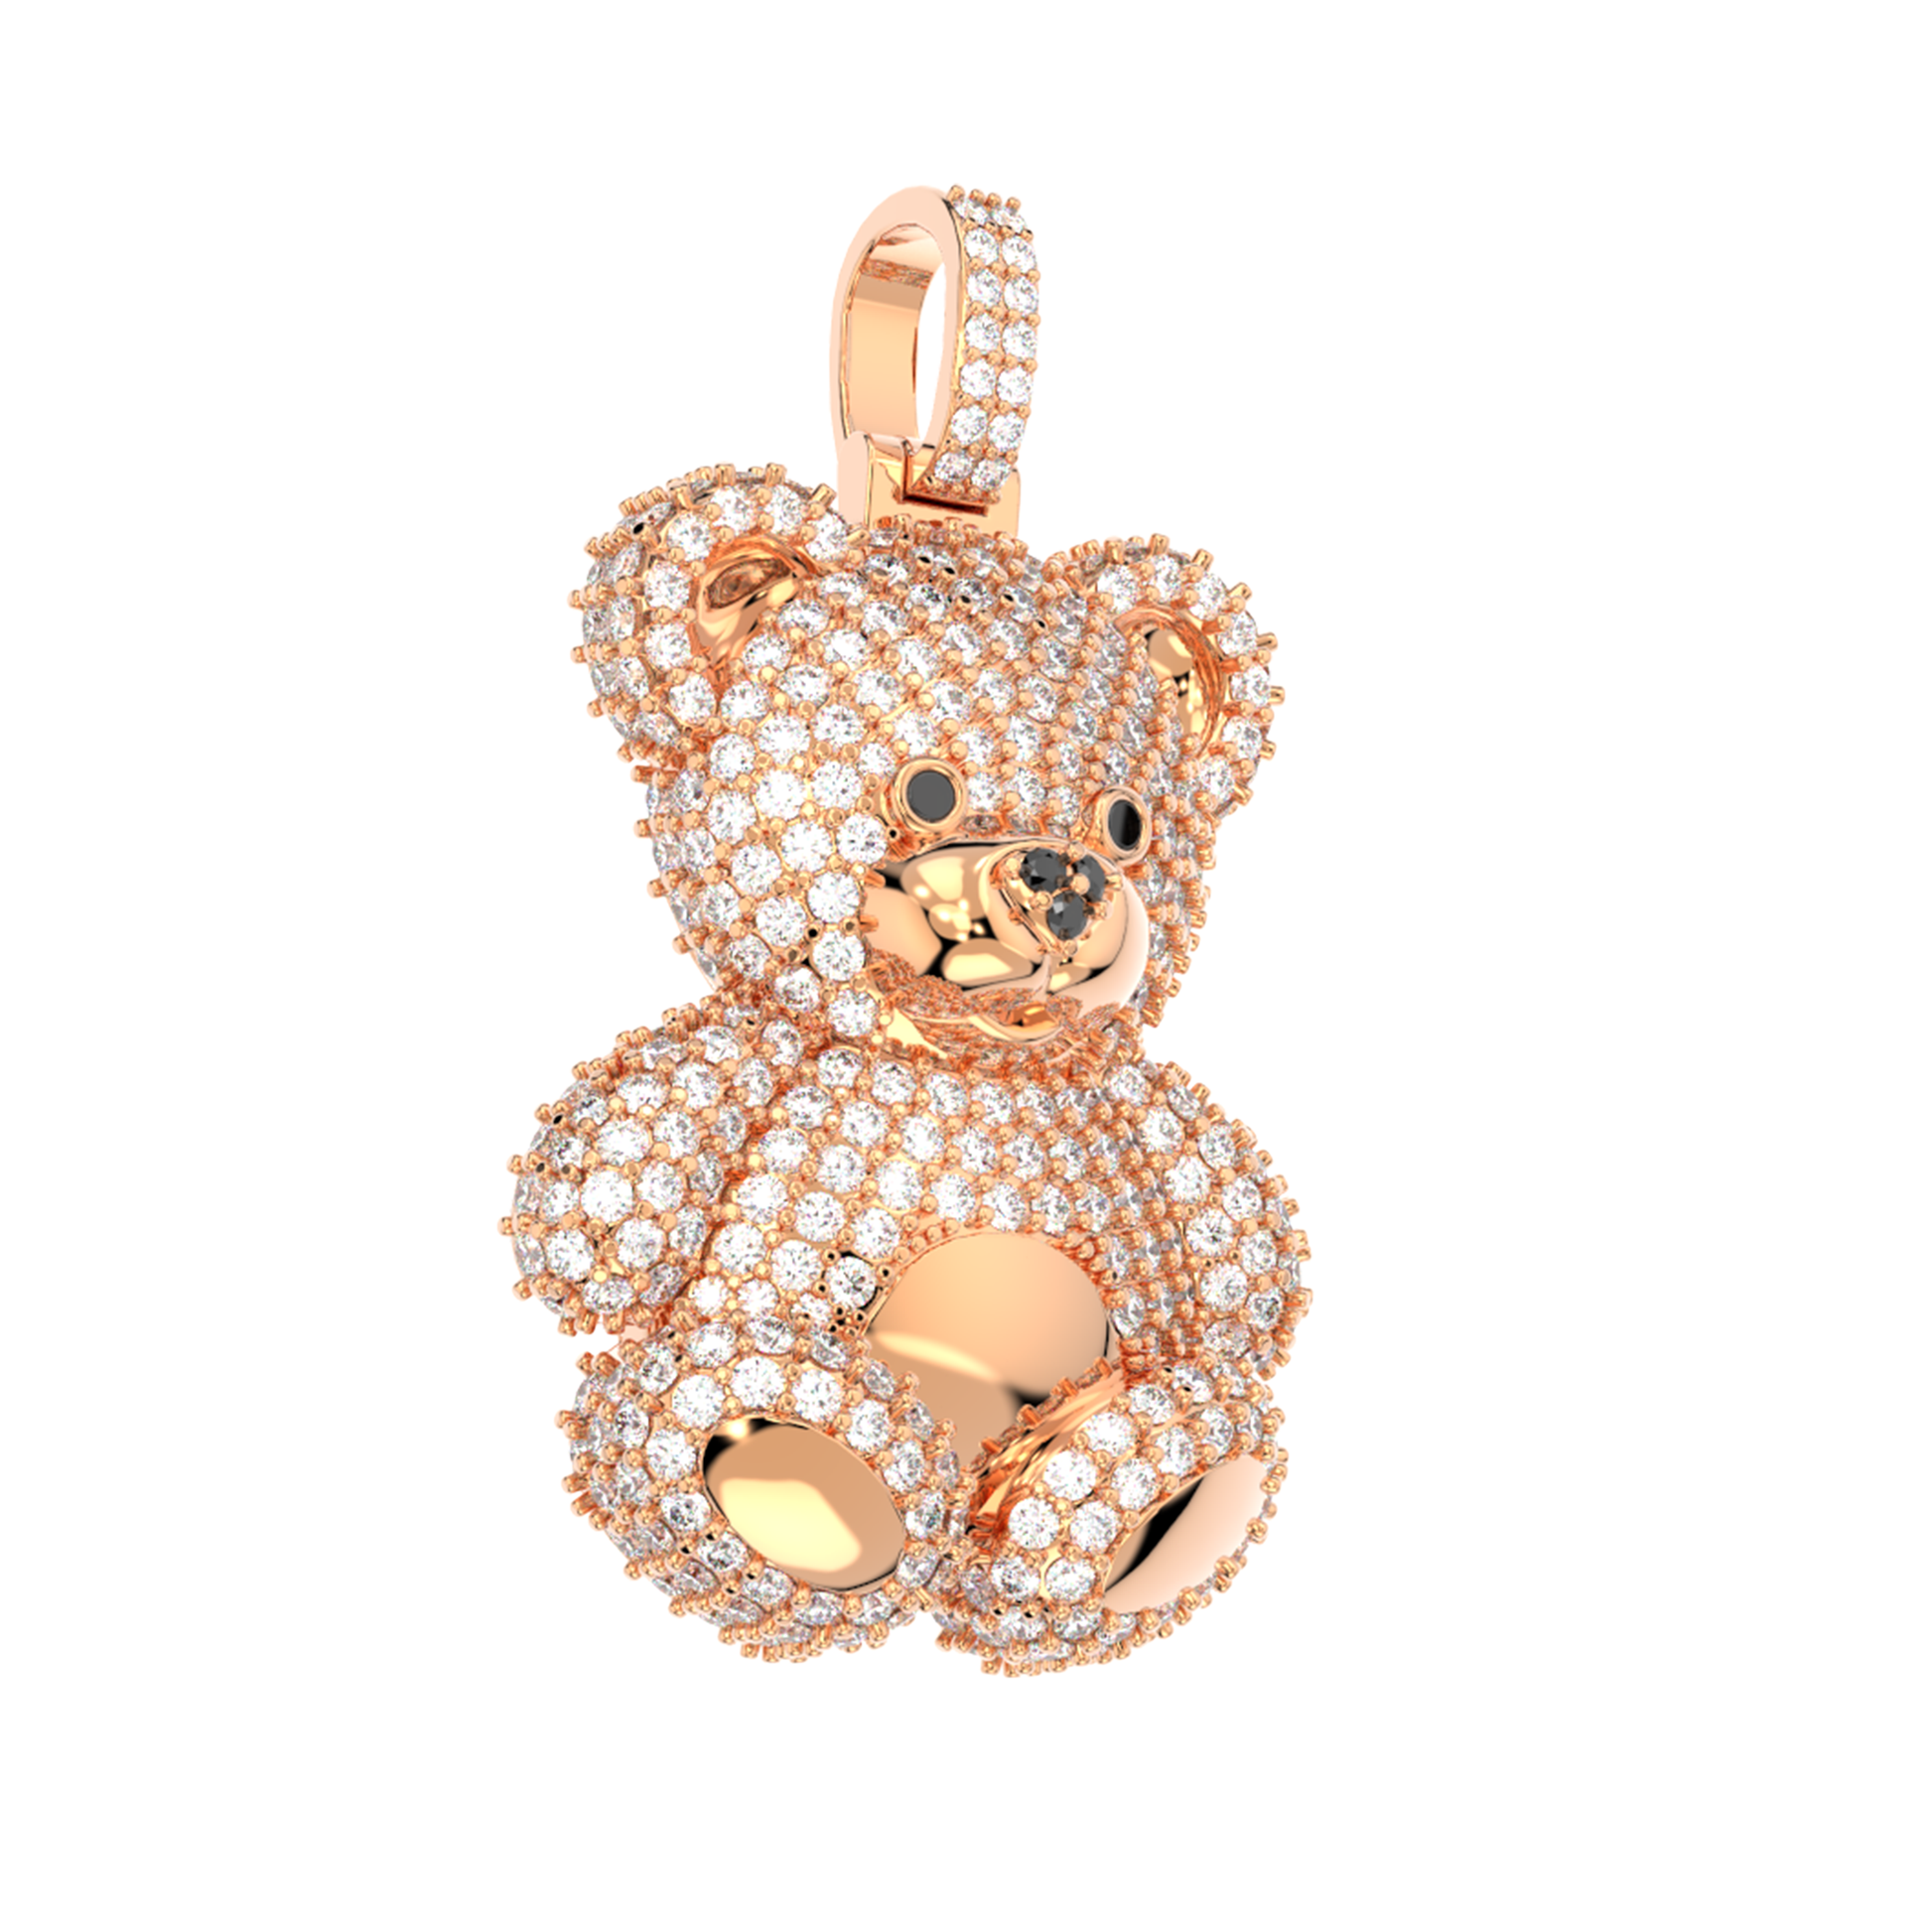 Diamond Teddy Bear - 38 For Sale on 1stDibs  teddy bear diamond pendant, diamond  teddy bear necklace, diamond teddy bear pendant